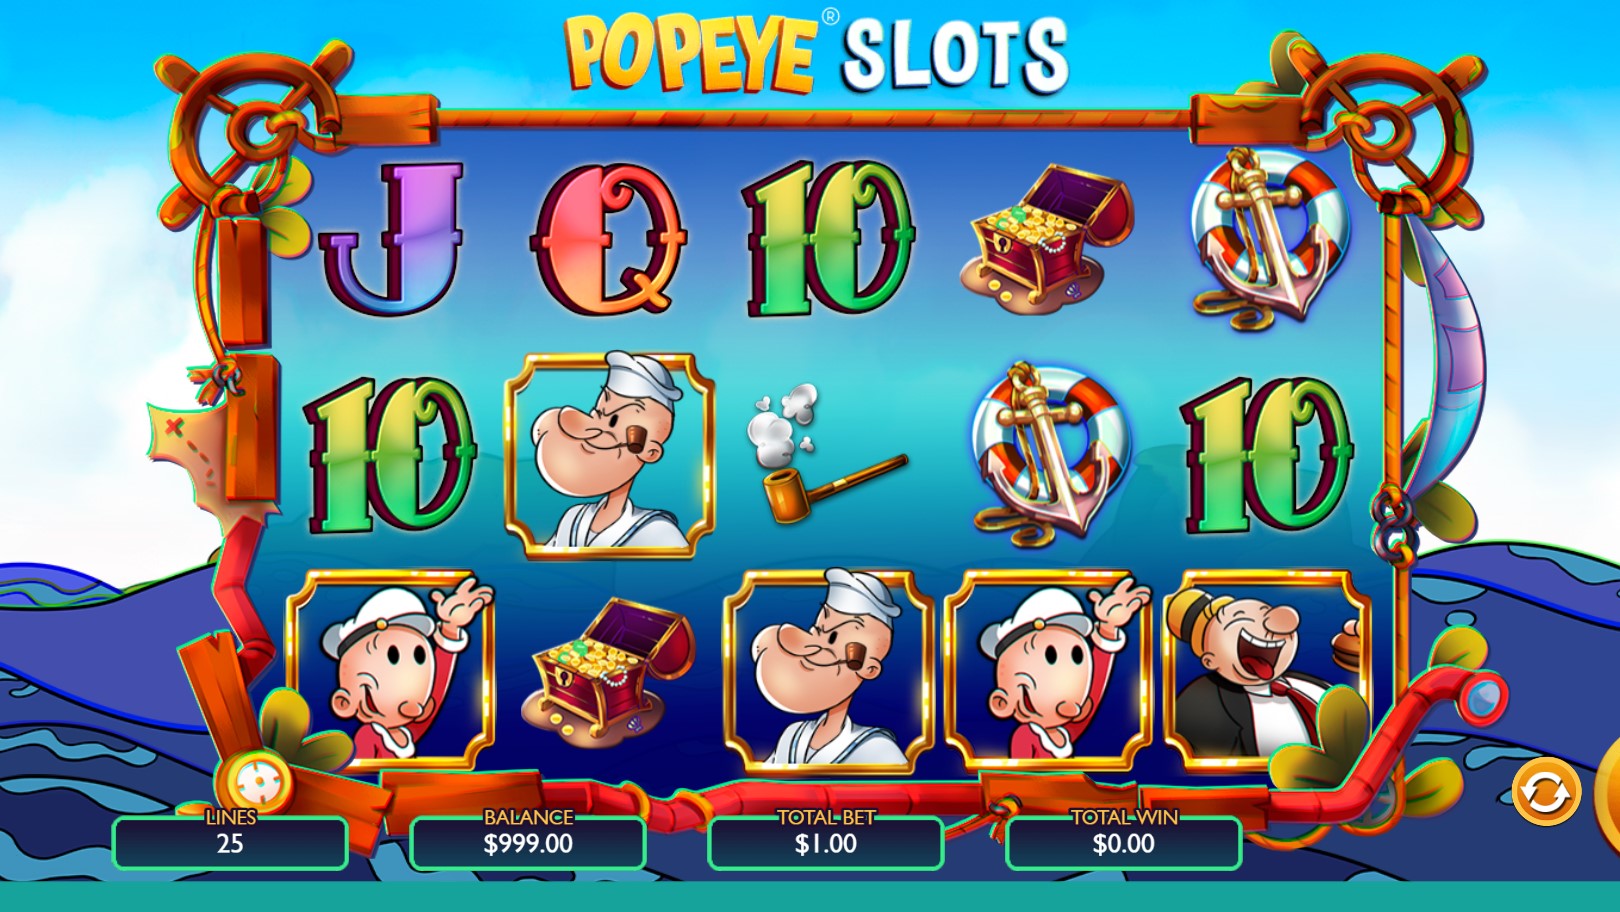 Popeye Slots 2 Vibra Gaming